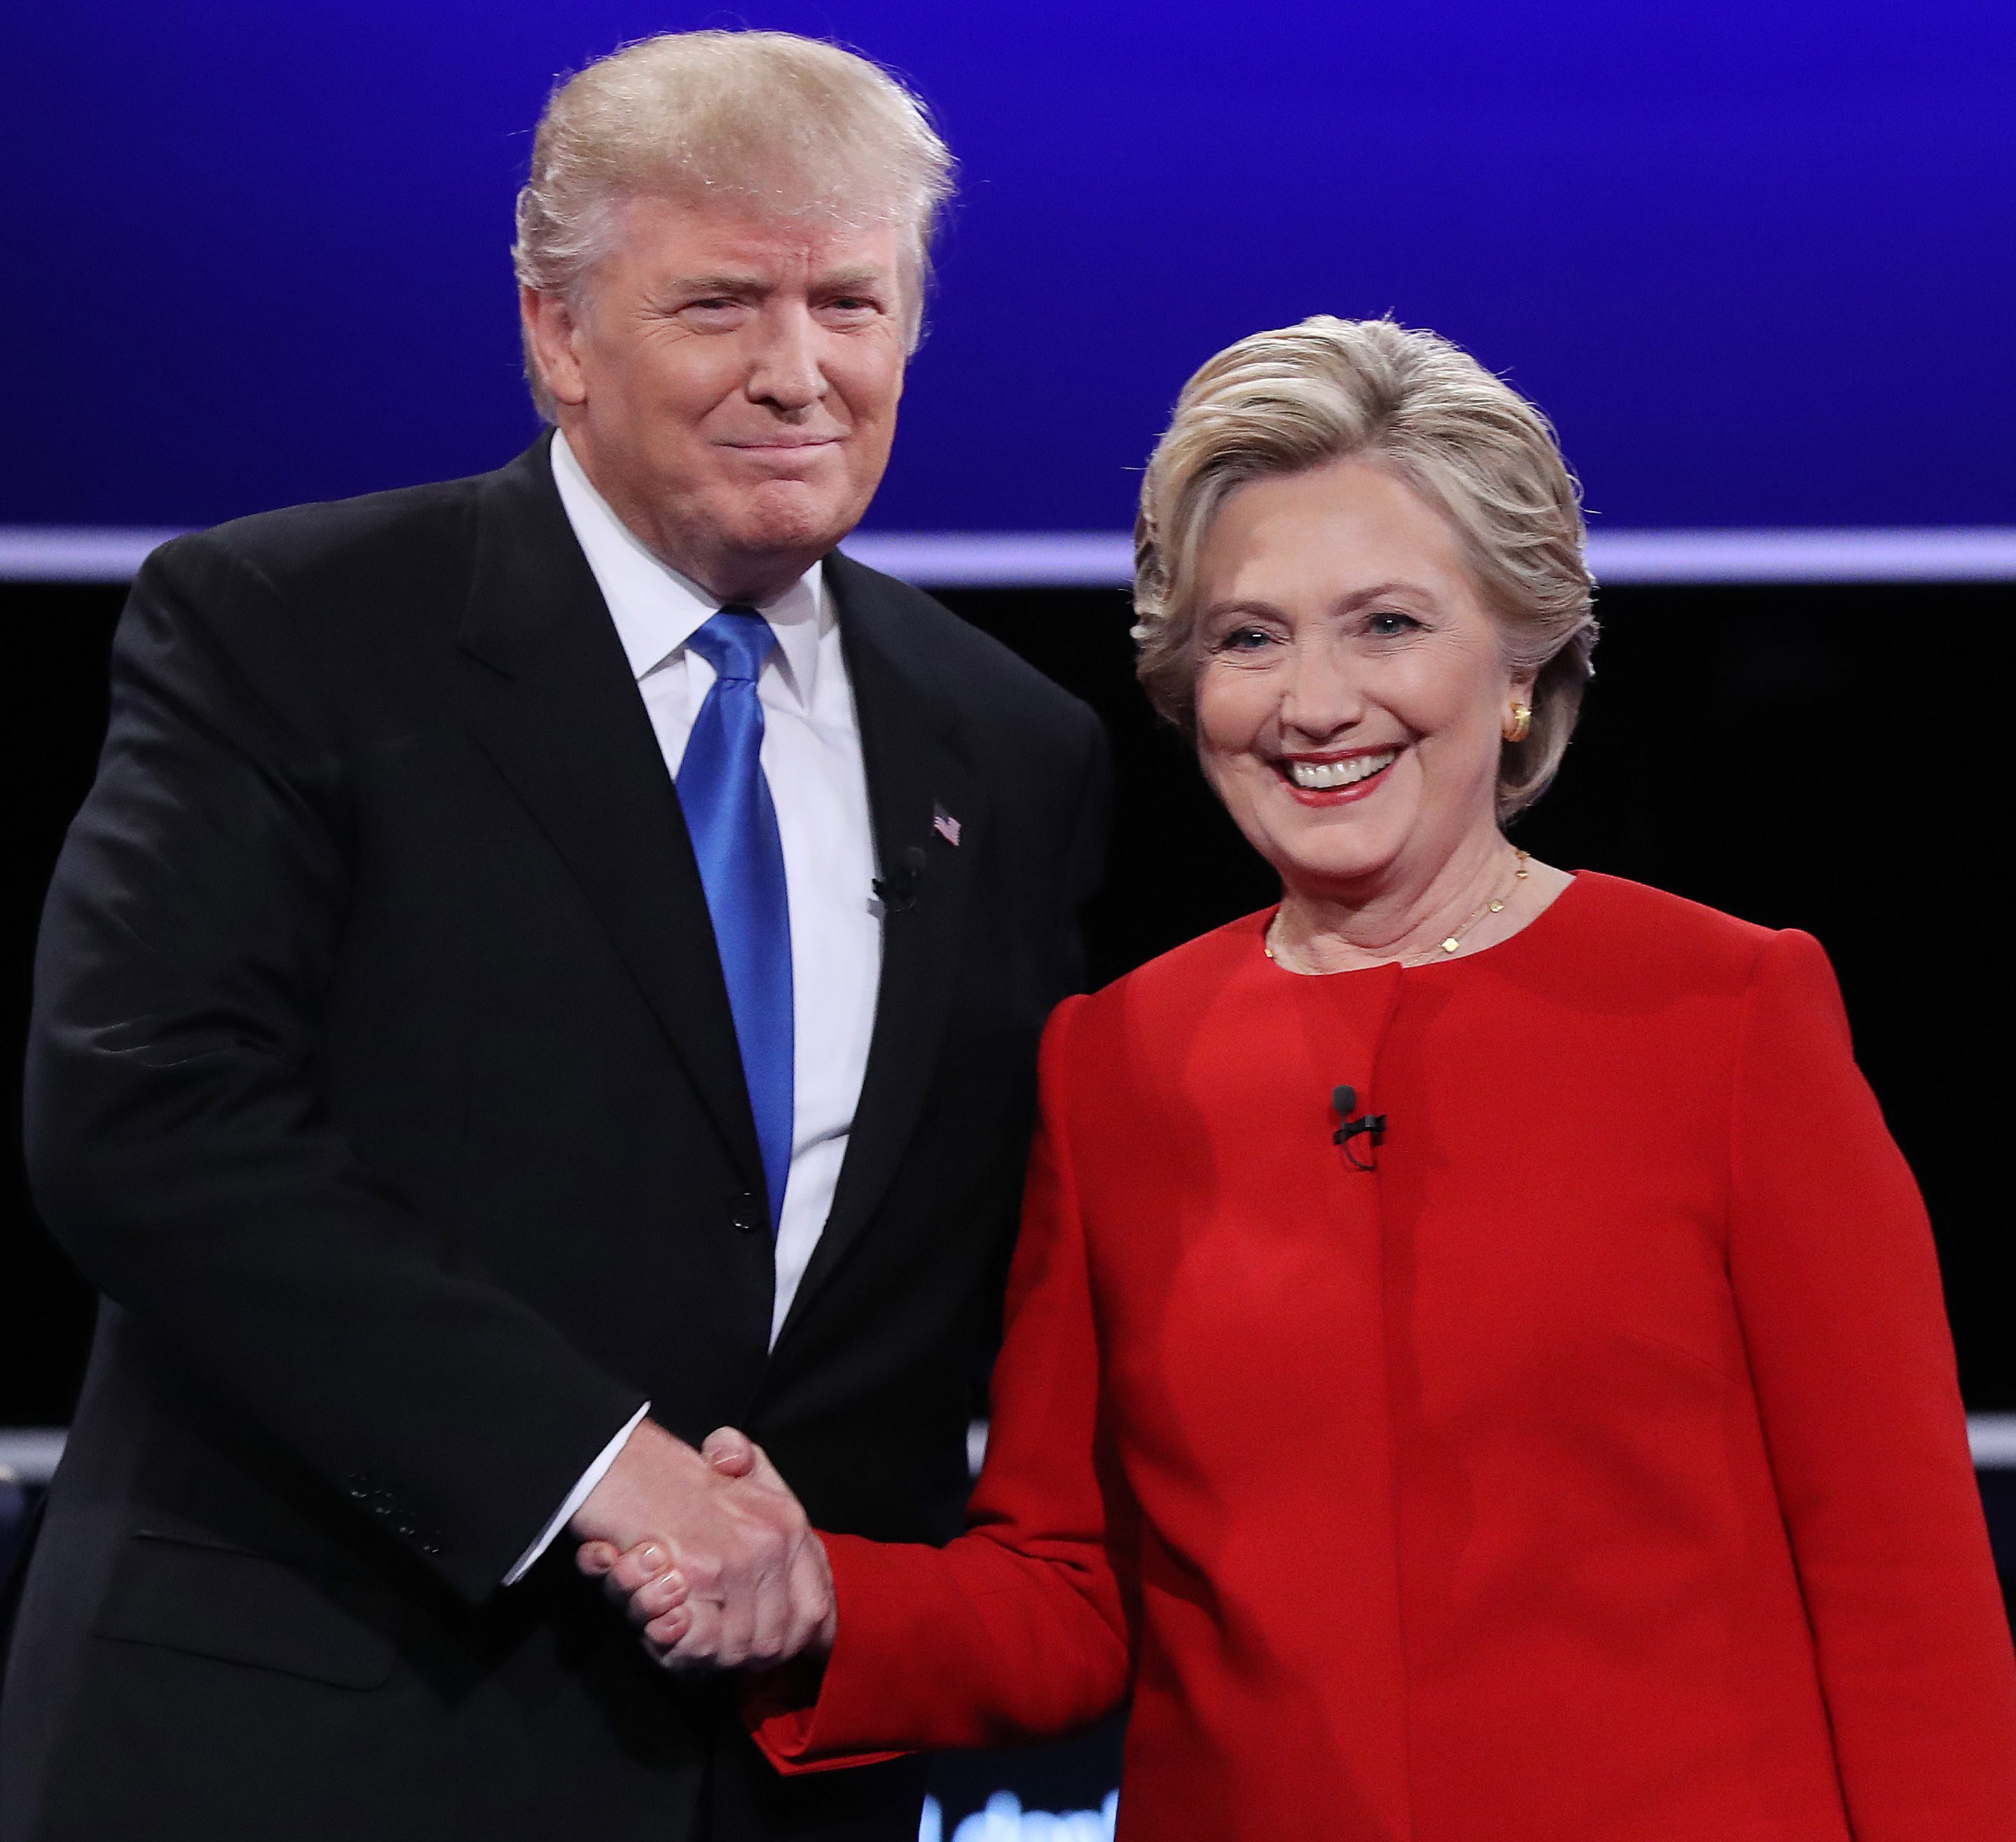 Η προεκλογική εκστρατεία Τραμπ-Κλίντον θέμα σε μίνι τηλεοπτική σειρά